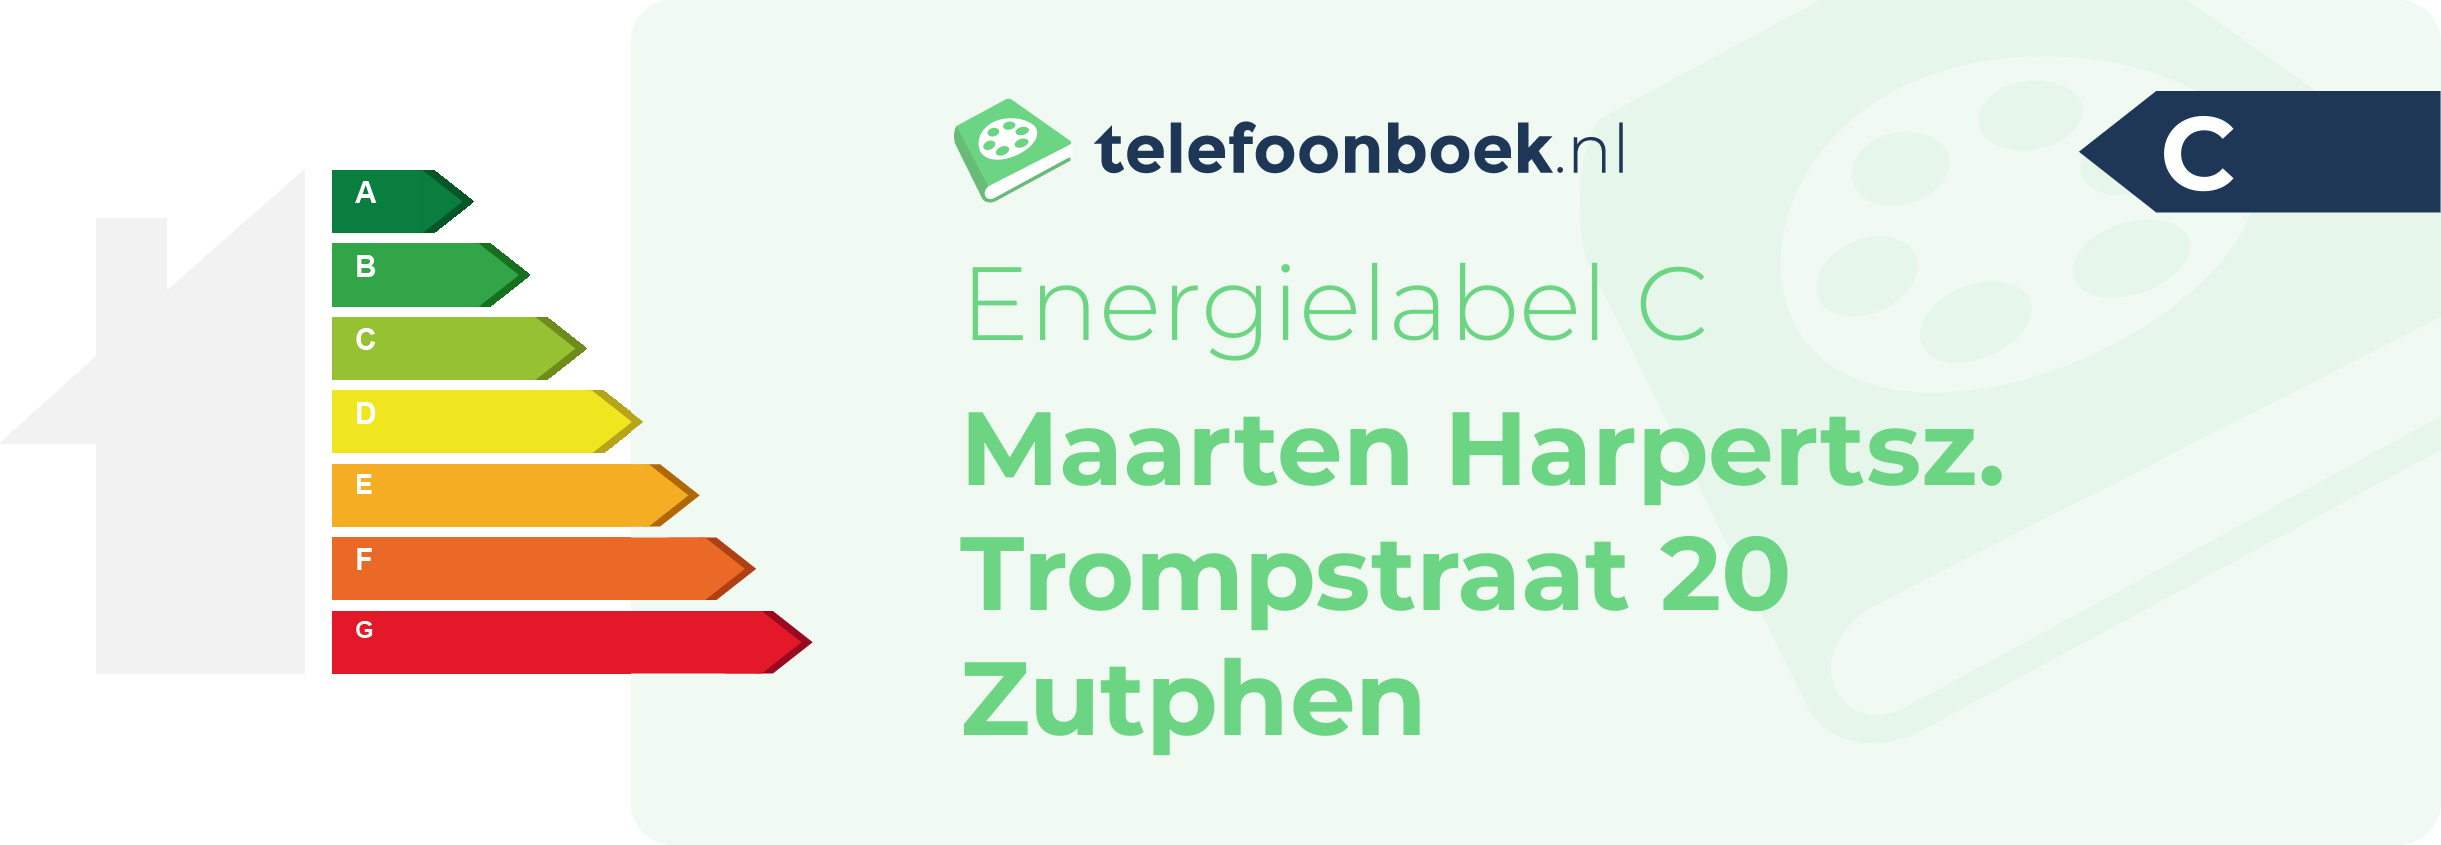 Energielabel Maarten Harpertsz. Trompstraat 20 Zutphen